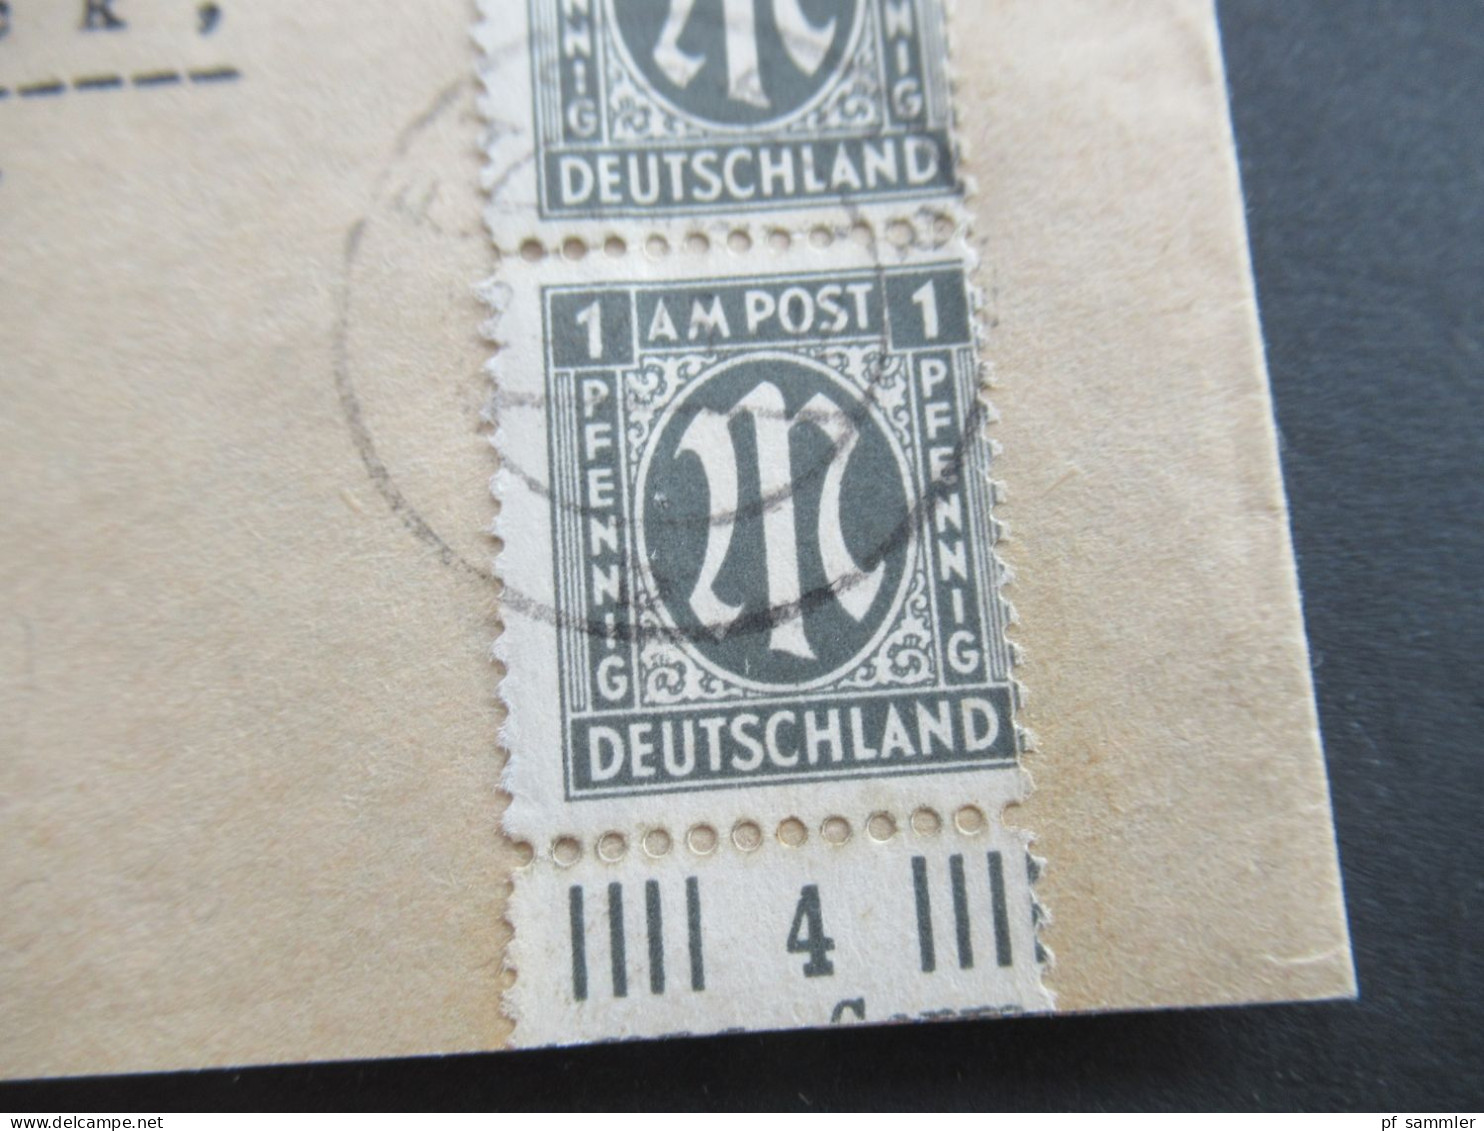 Am Post 21.12.1945 MiF Am. Druck / Deutscher Druck Nr.16 Unterrand Einschreiben Not R-Zettel Passau 2 - Osnabrück - Lettres & Documents